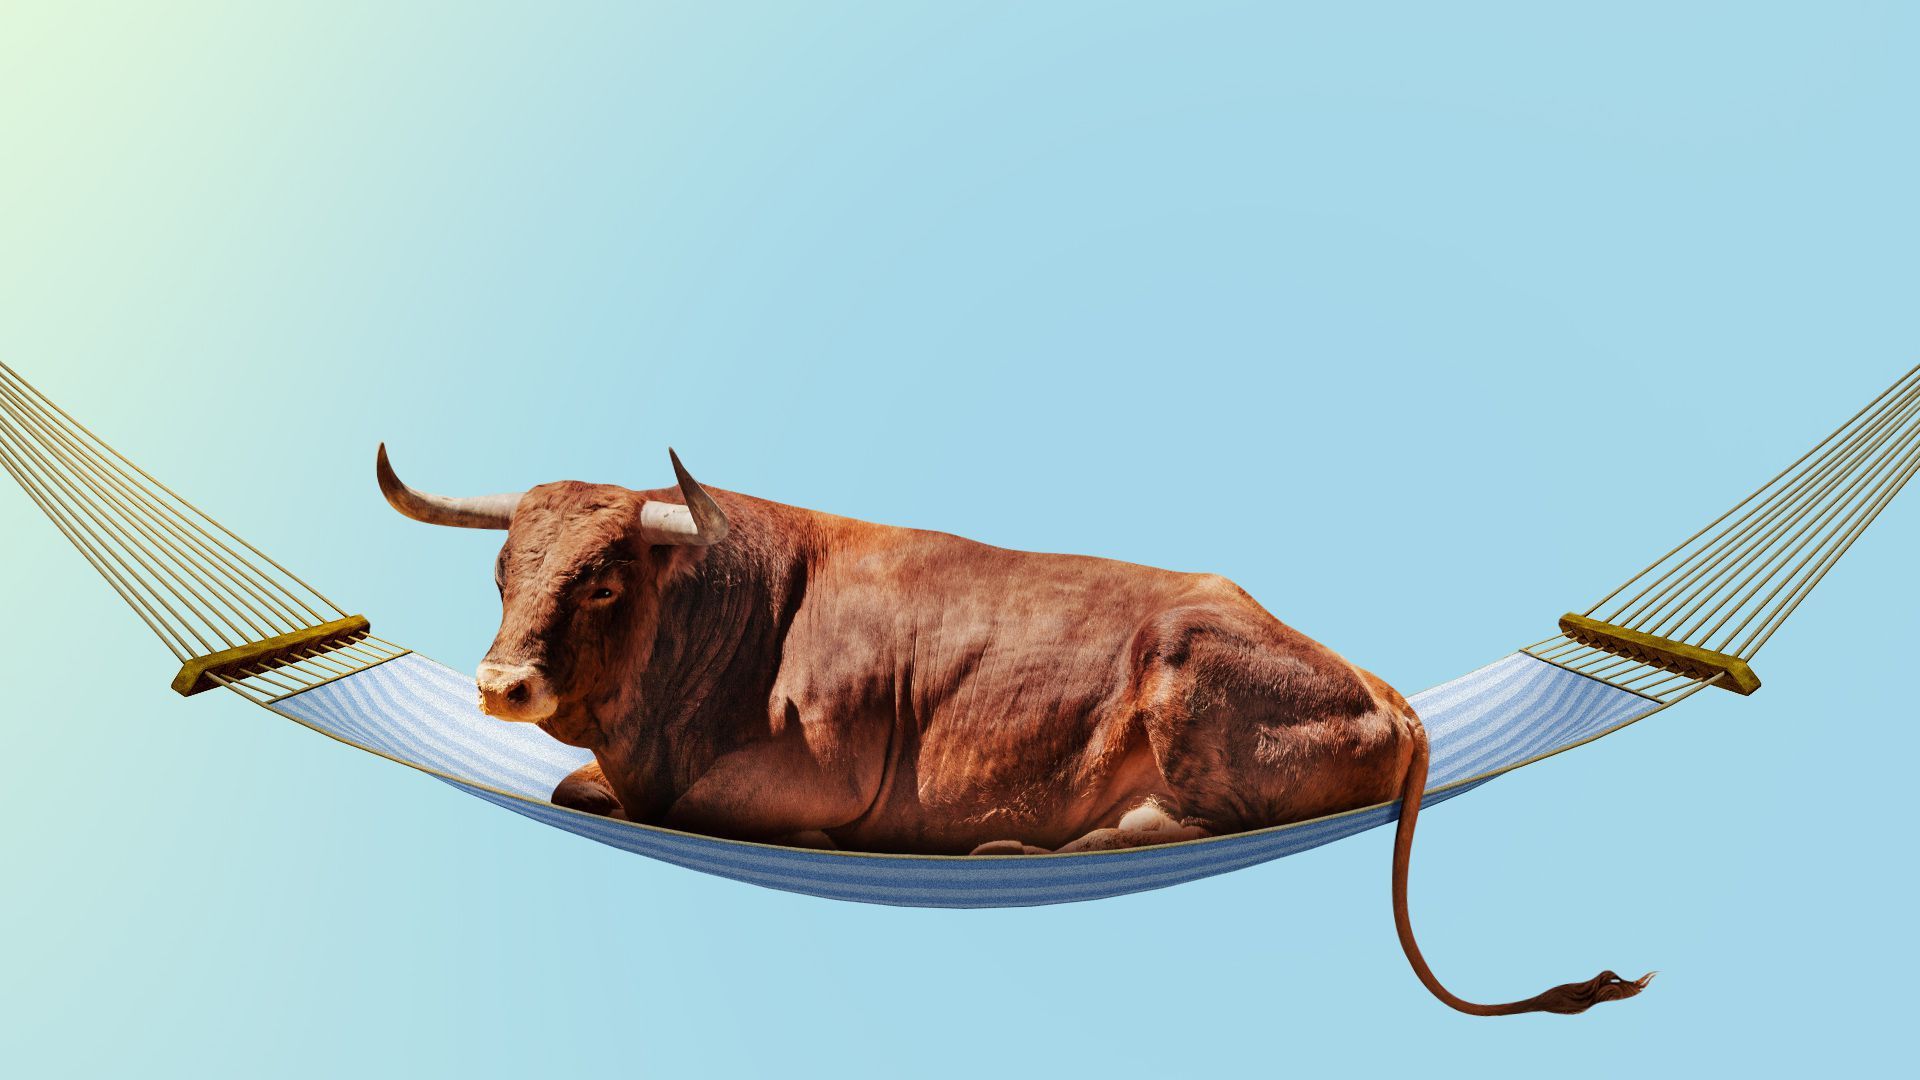 Illustration of a bull on a hammock.